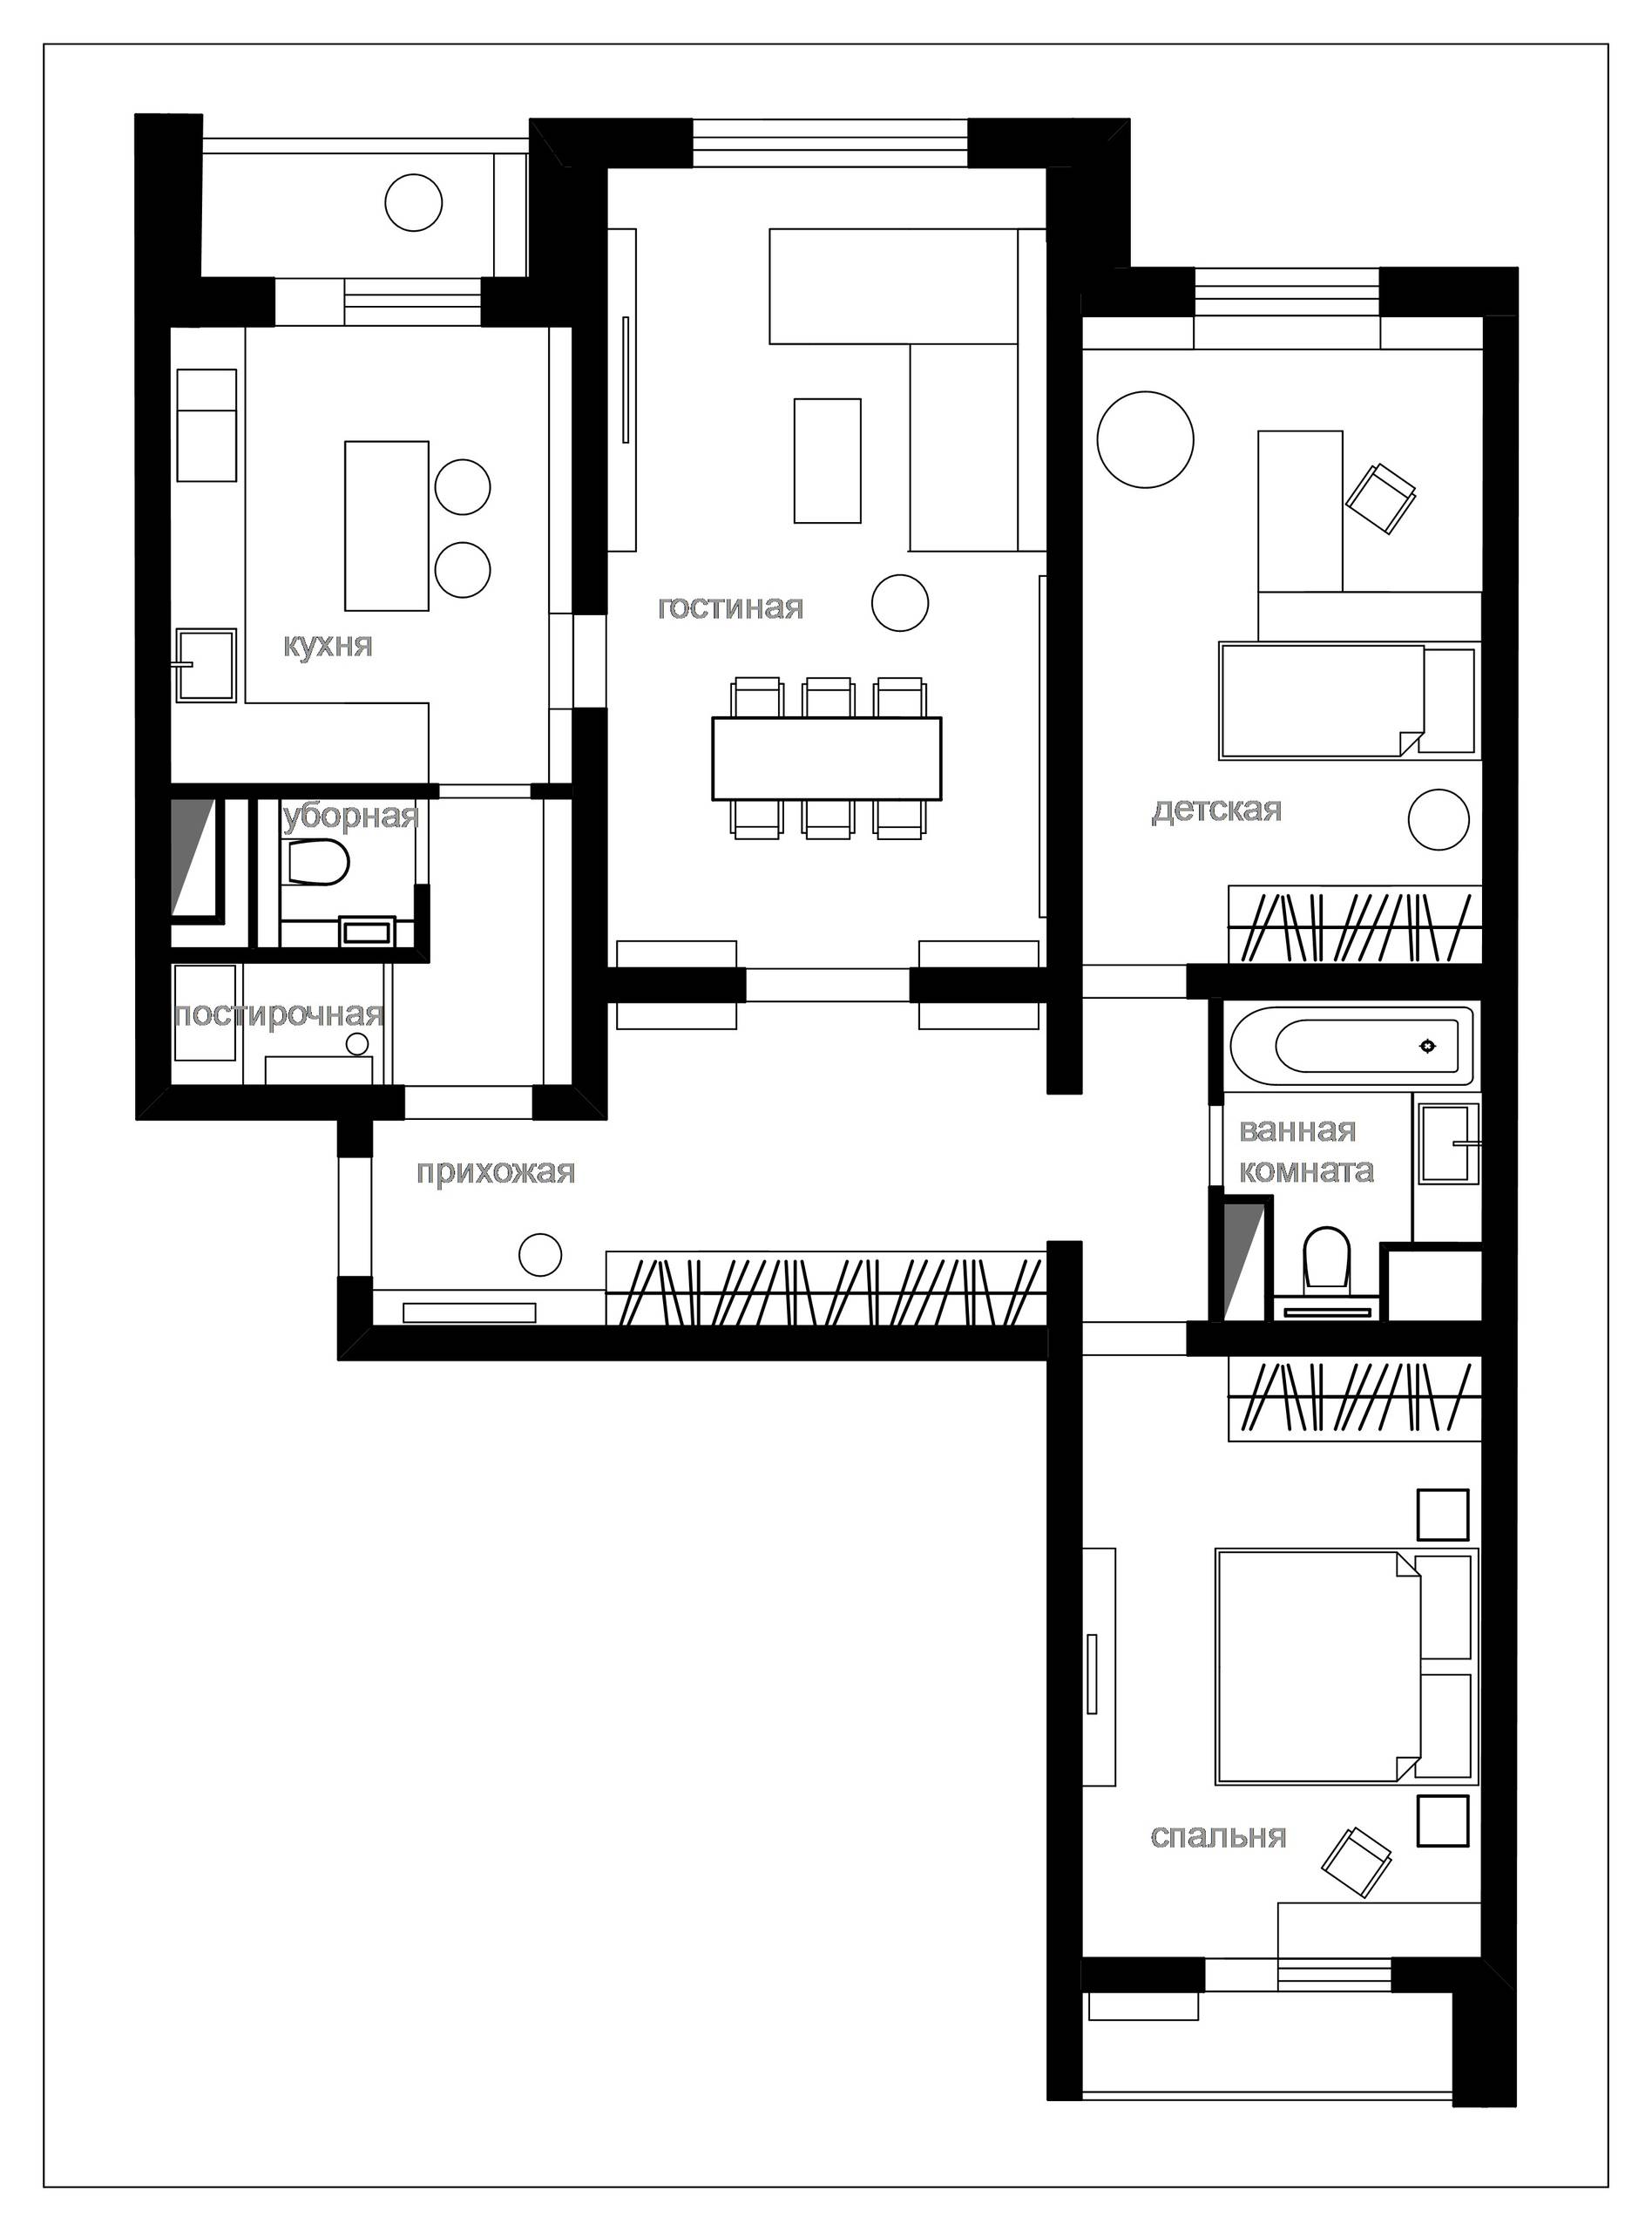 Квартира-распашонка: планировка 1,2 и 3-х комнатных квартир, фото